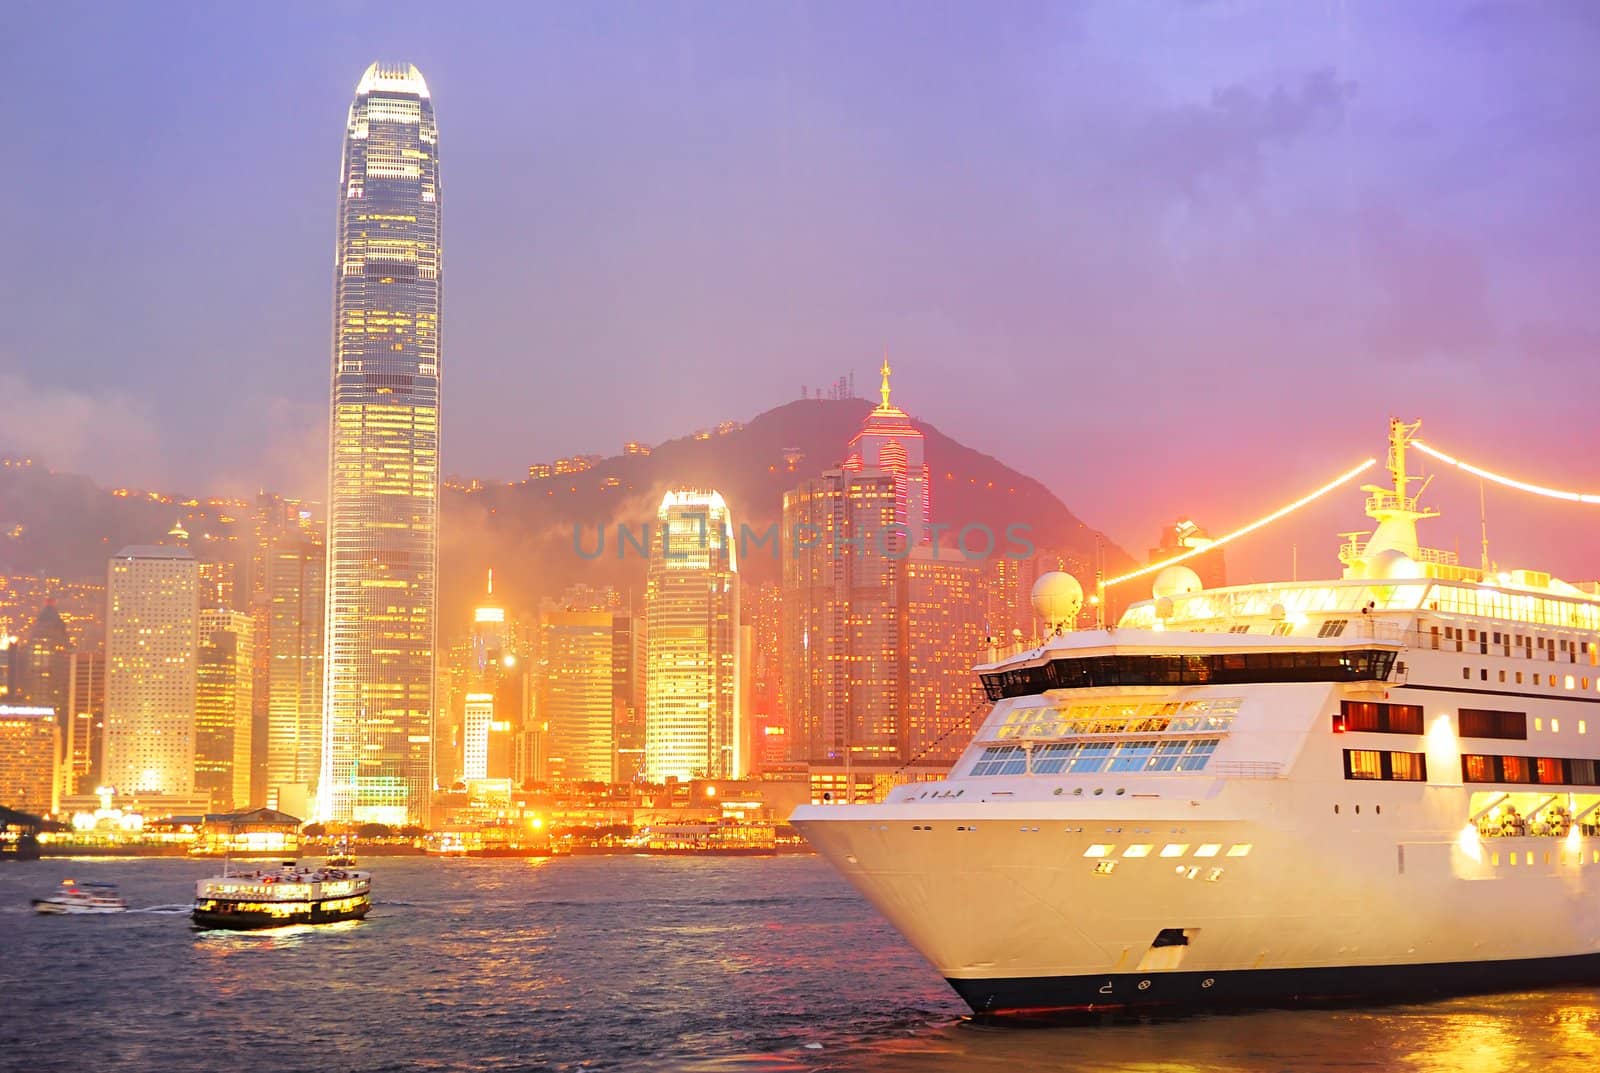 Cruise Liner in Hong Kong at night